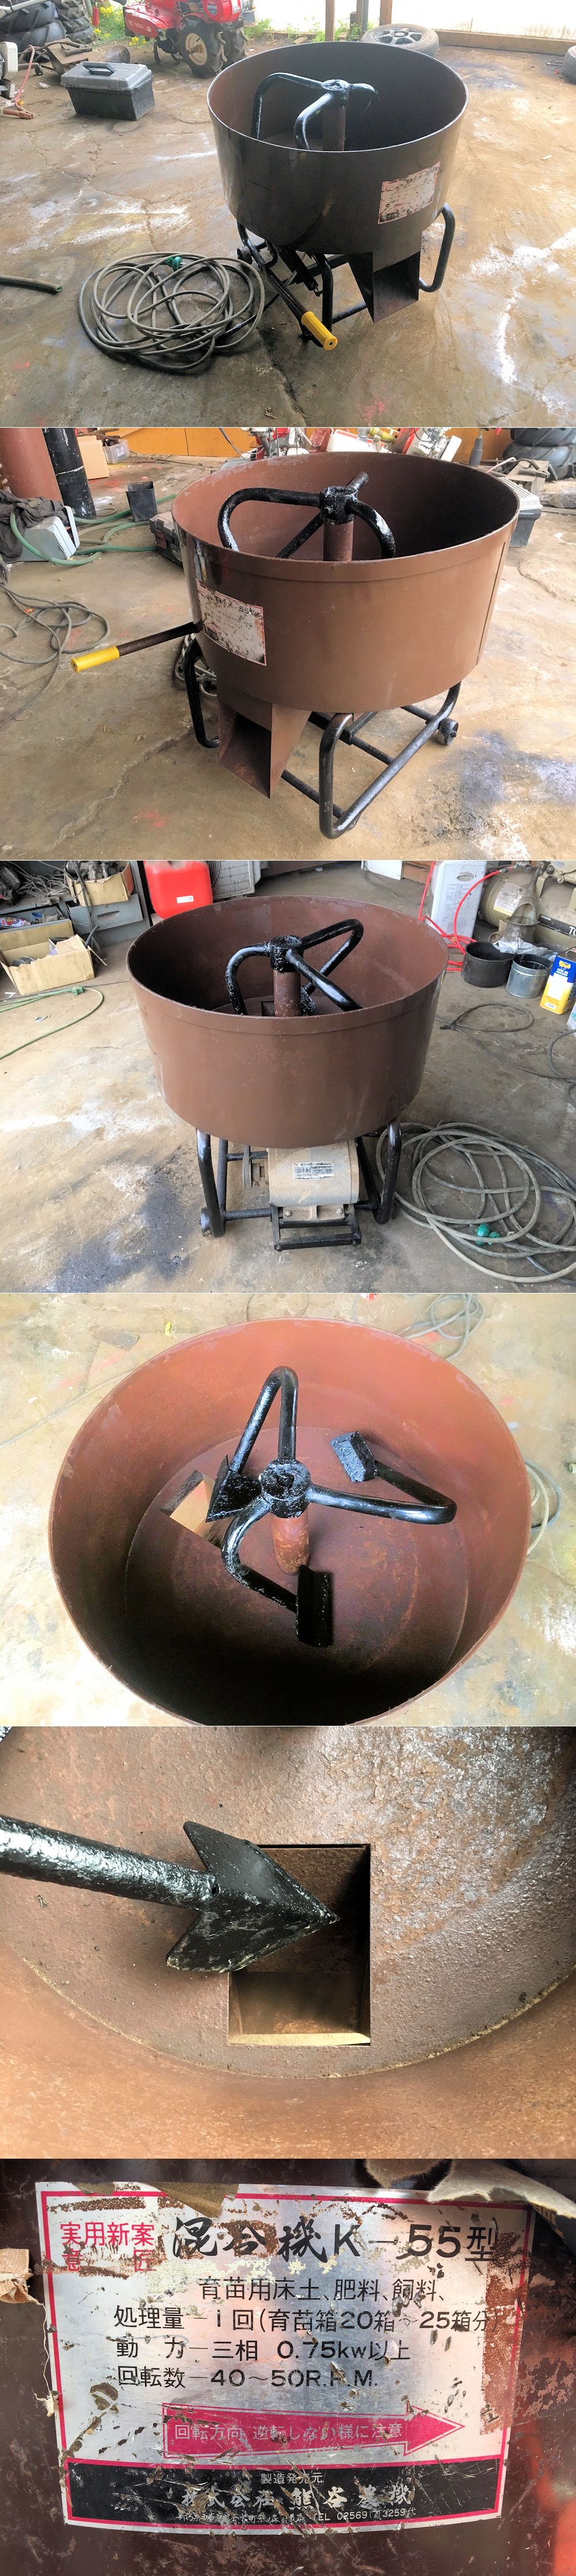 熊谷農機 ミキサー 攪拌機 混合機 肥料 モルタル コンクリートミキサー K-55 三相200V 美品 中古